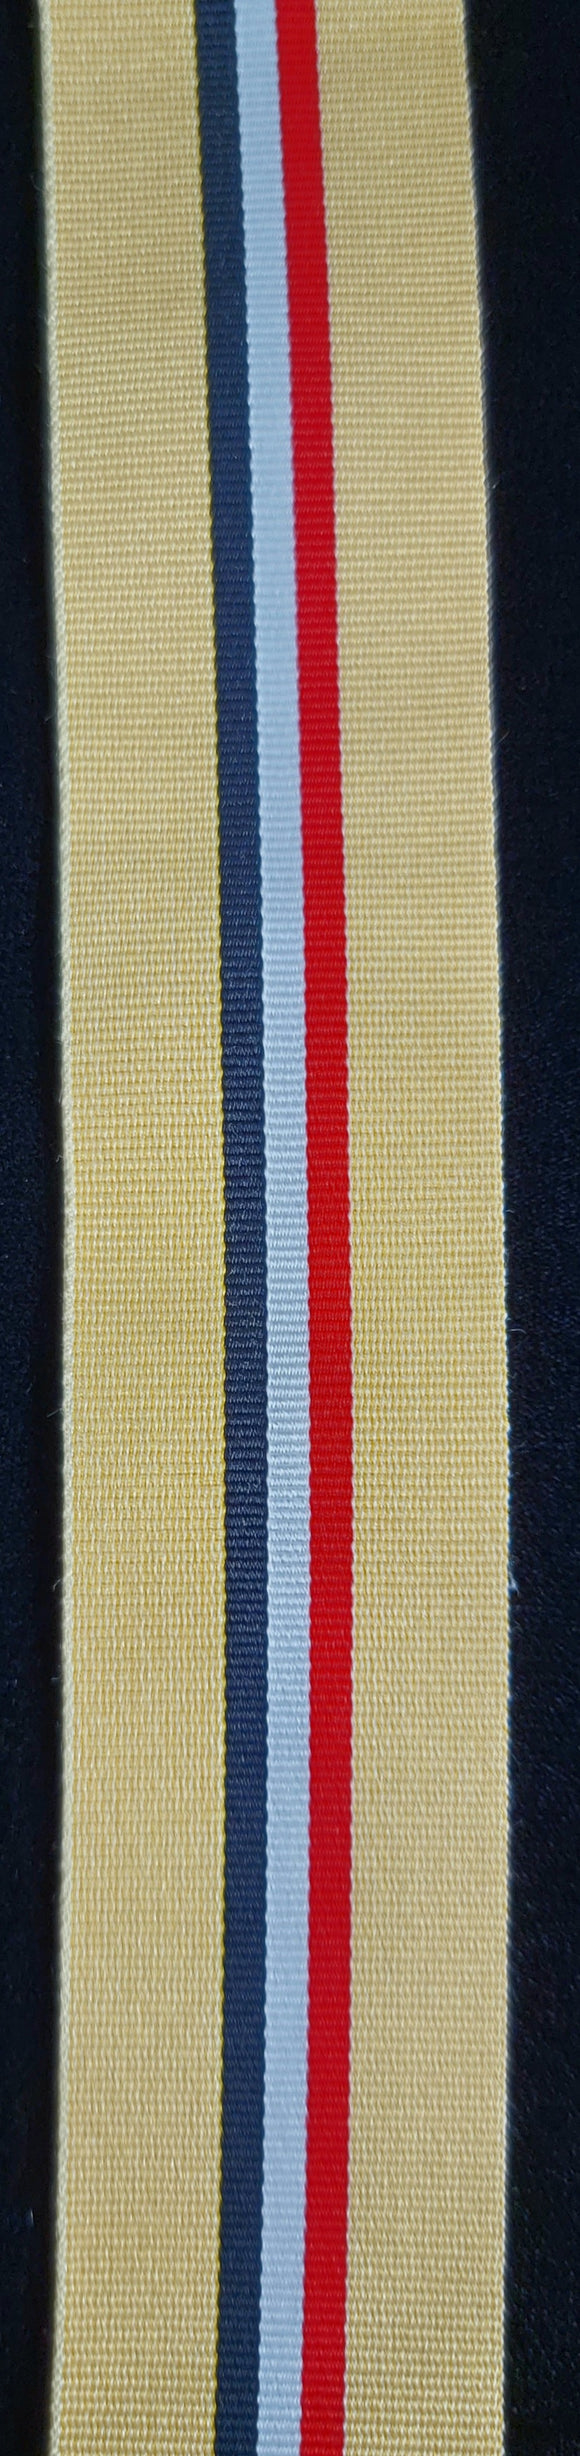 Ribbon, UK Iraq Medal Op Telic